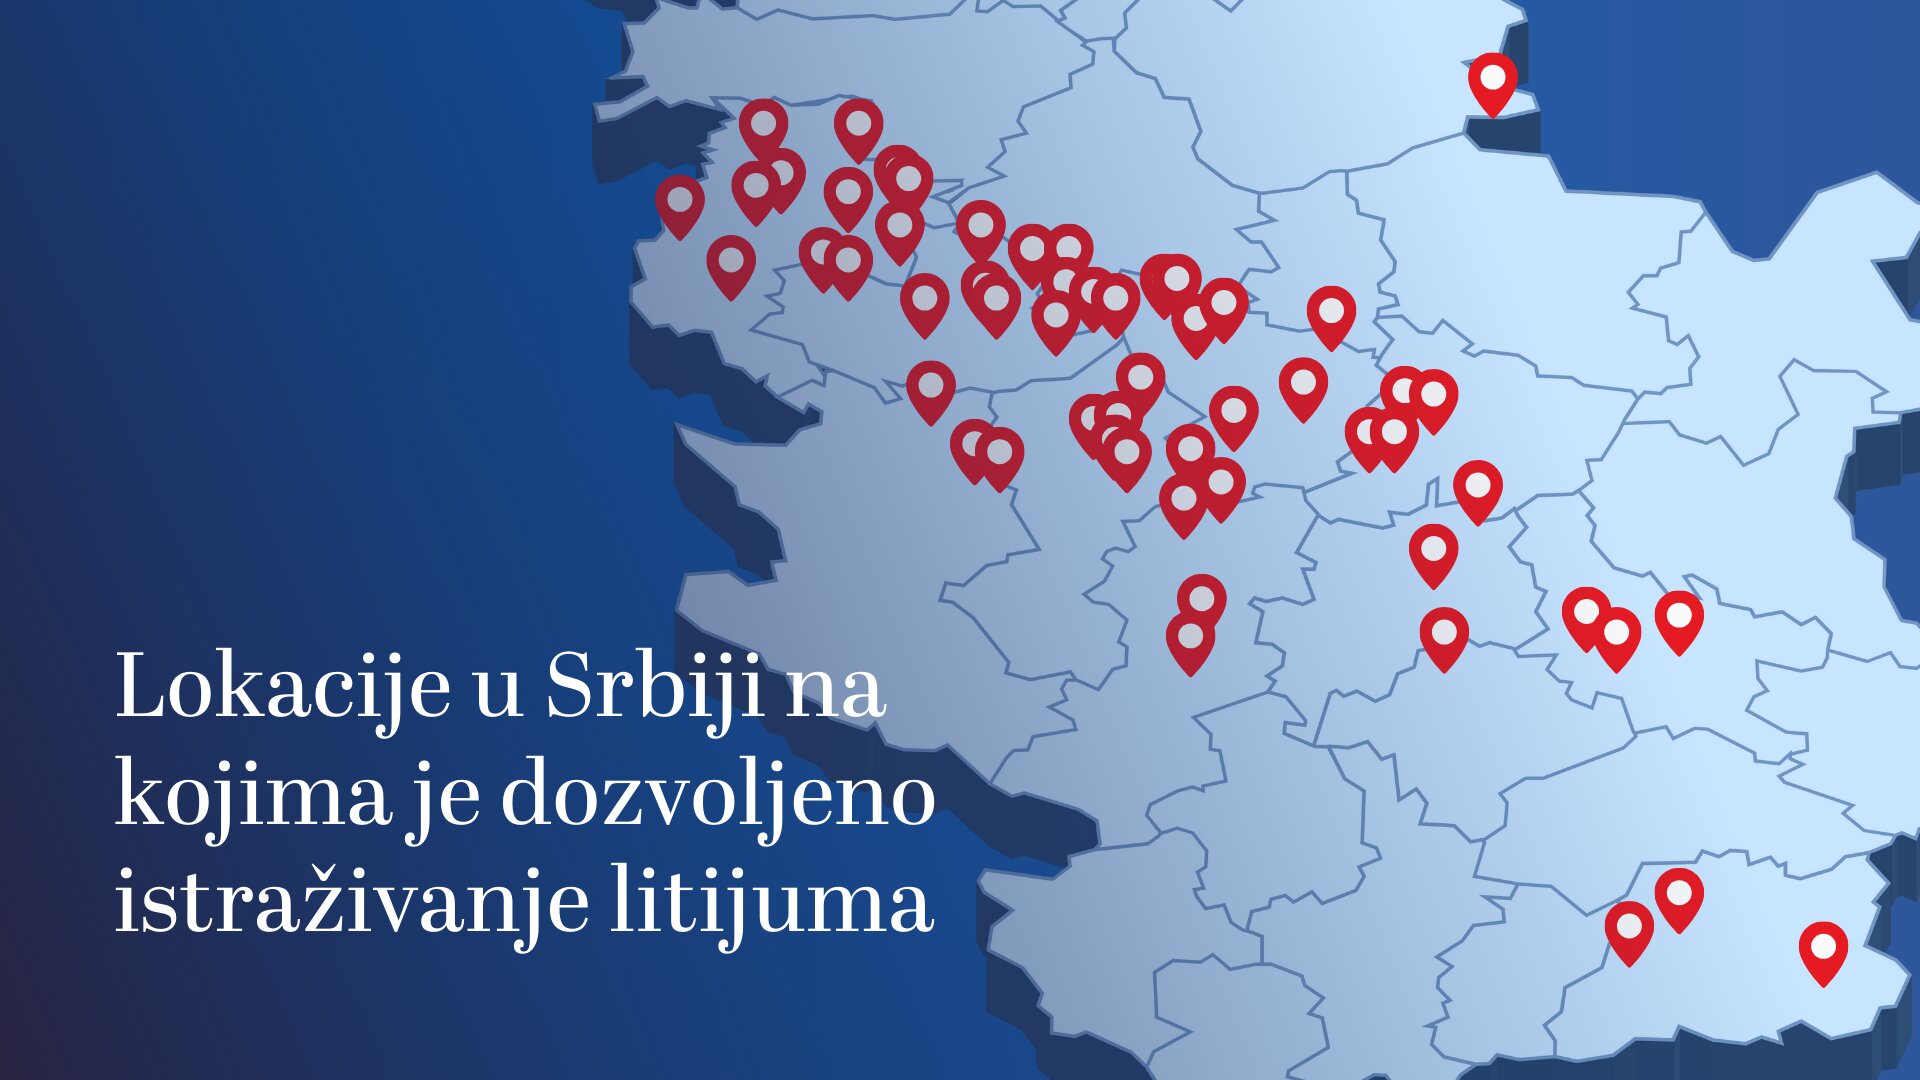 "U slučaju da prođe rudnik Rio Tinta u Loznici nastaće domino efekat": U Srbiji do sada izdato 69 rešenja za istraživanje litijuma (MAPA) 2